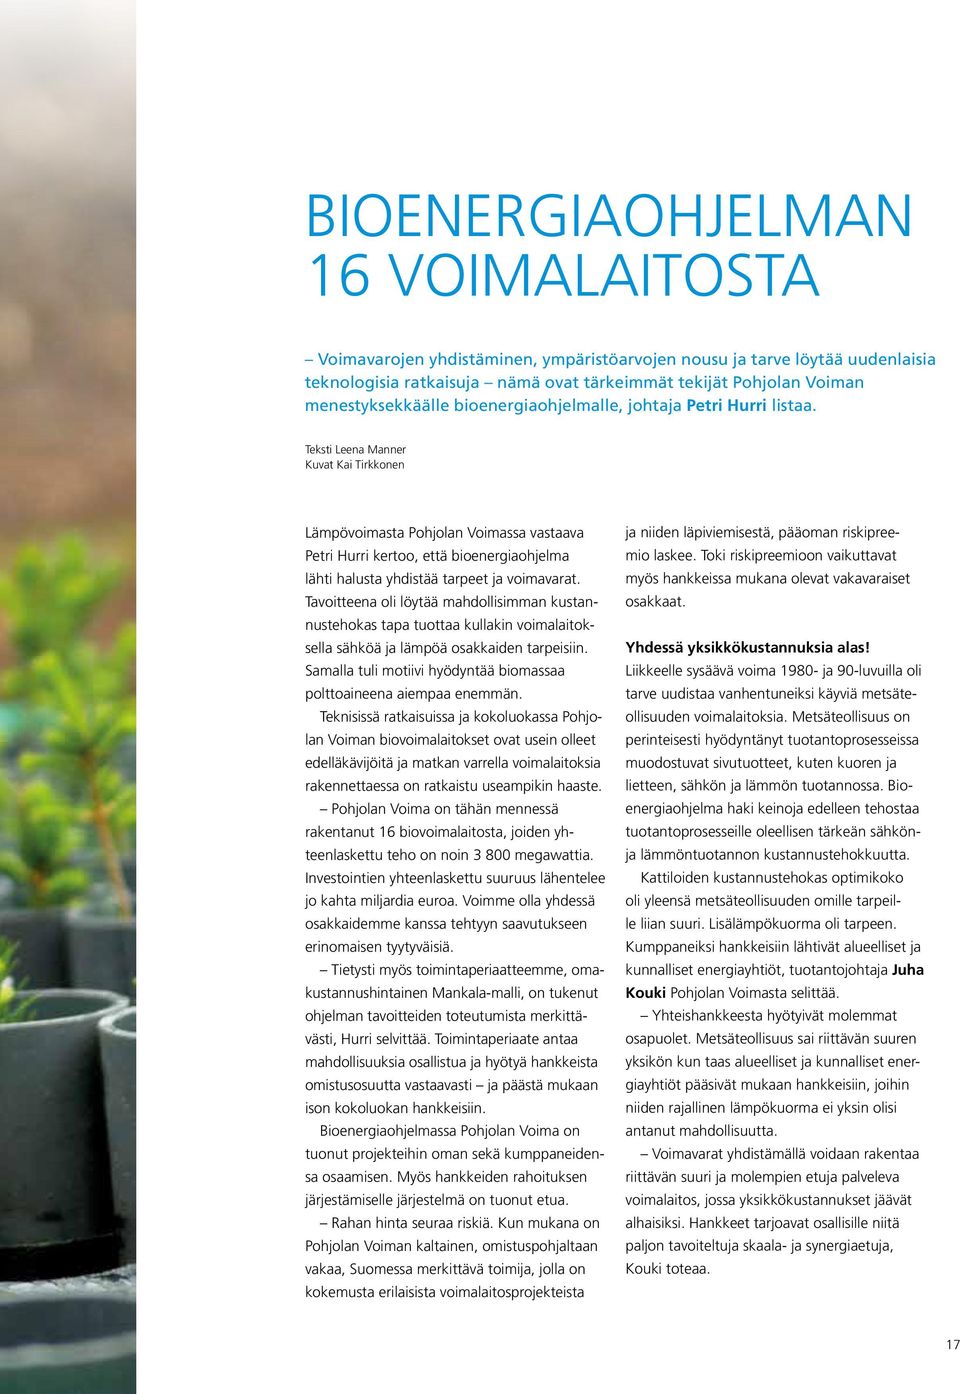 Teksti Leena Manner Kuvat Kai Tirkkonen Lämpövoimasta Pohjolan Voimassa vastaava Petri Hurri kertoo, että bioenergiaohjelma lähti halusta yhdistää tarpeet ja voimavarat.